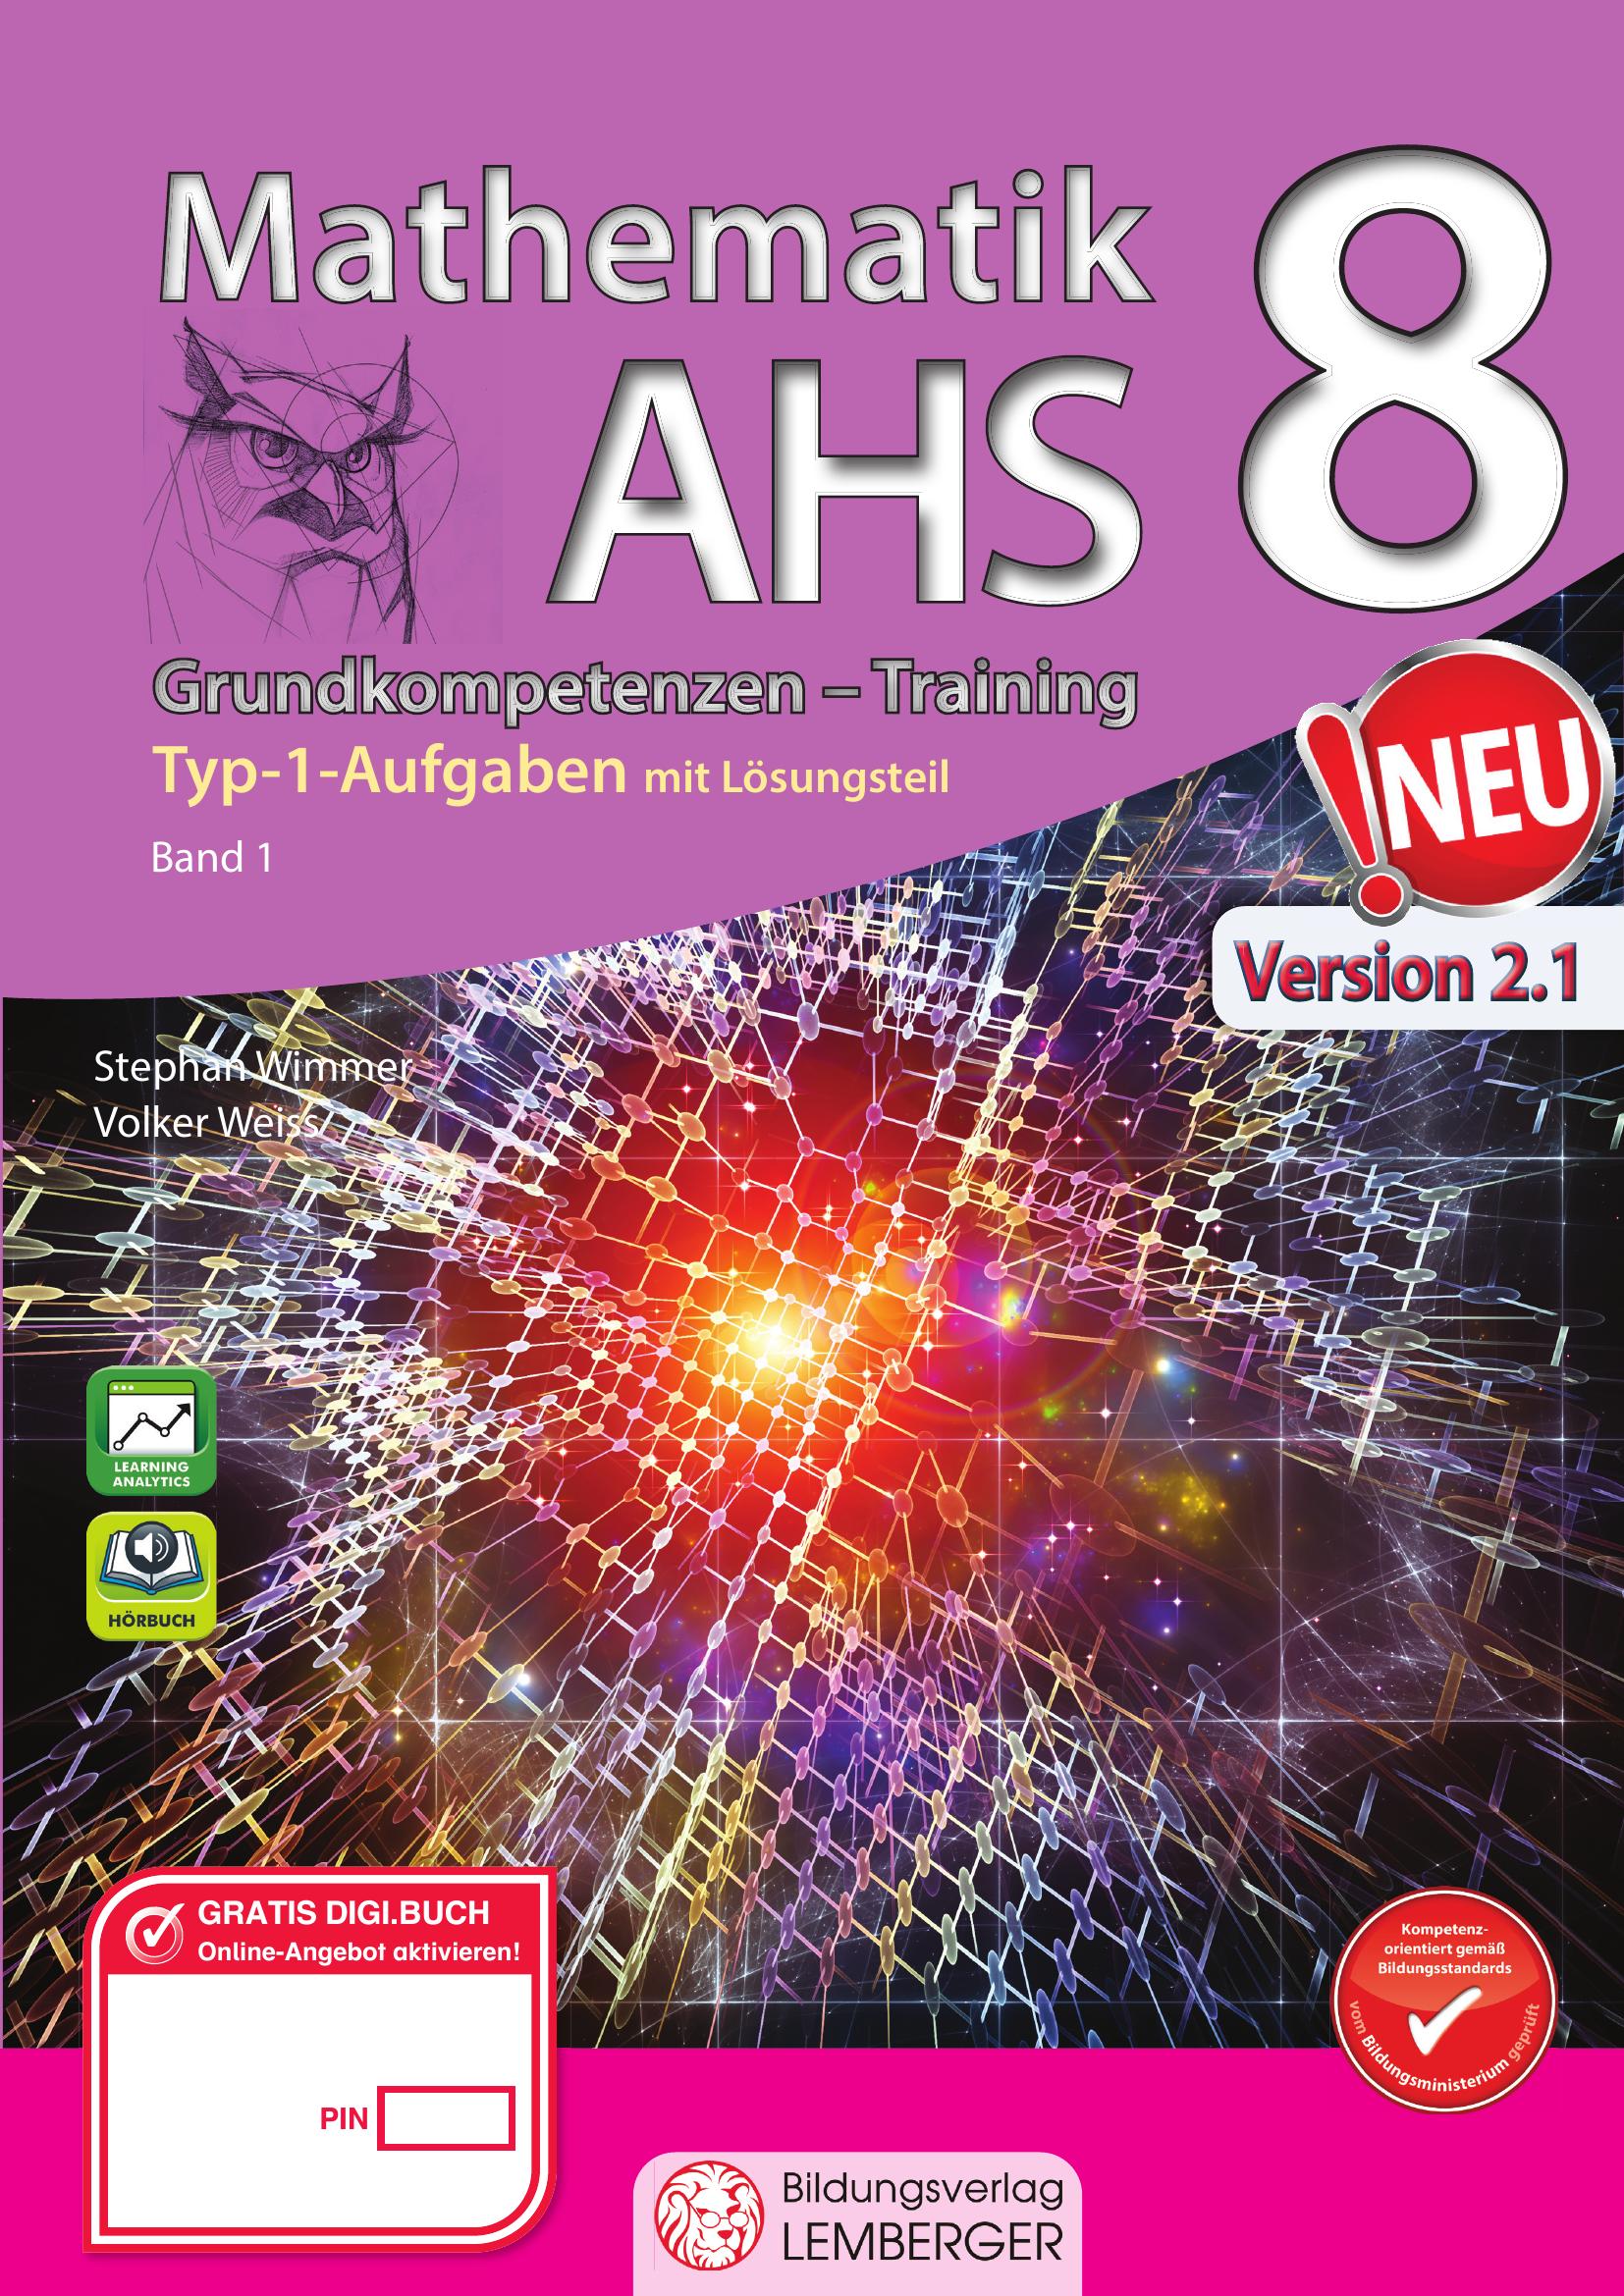 Mathematik AHS 8 – Grundkompetenzen Training Mathematik 8 v2.1 / Band 1 mit Lösungsteil